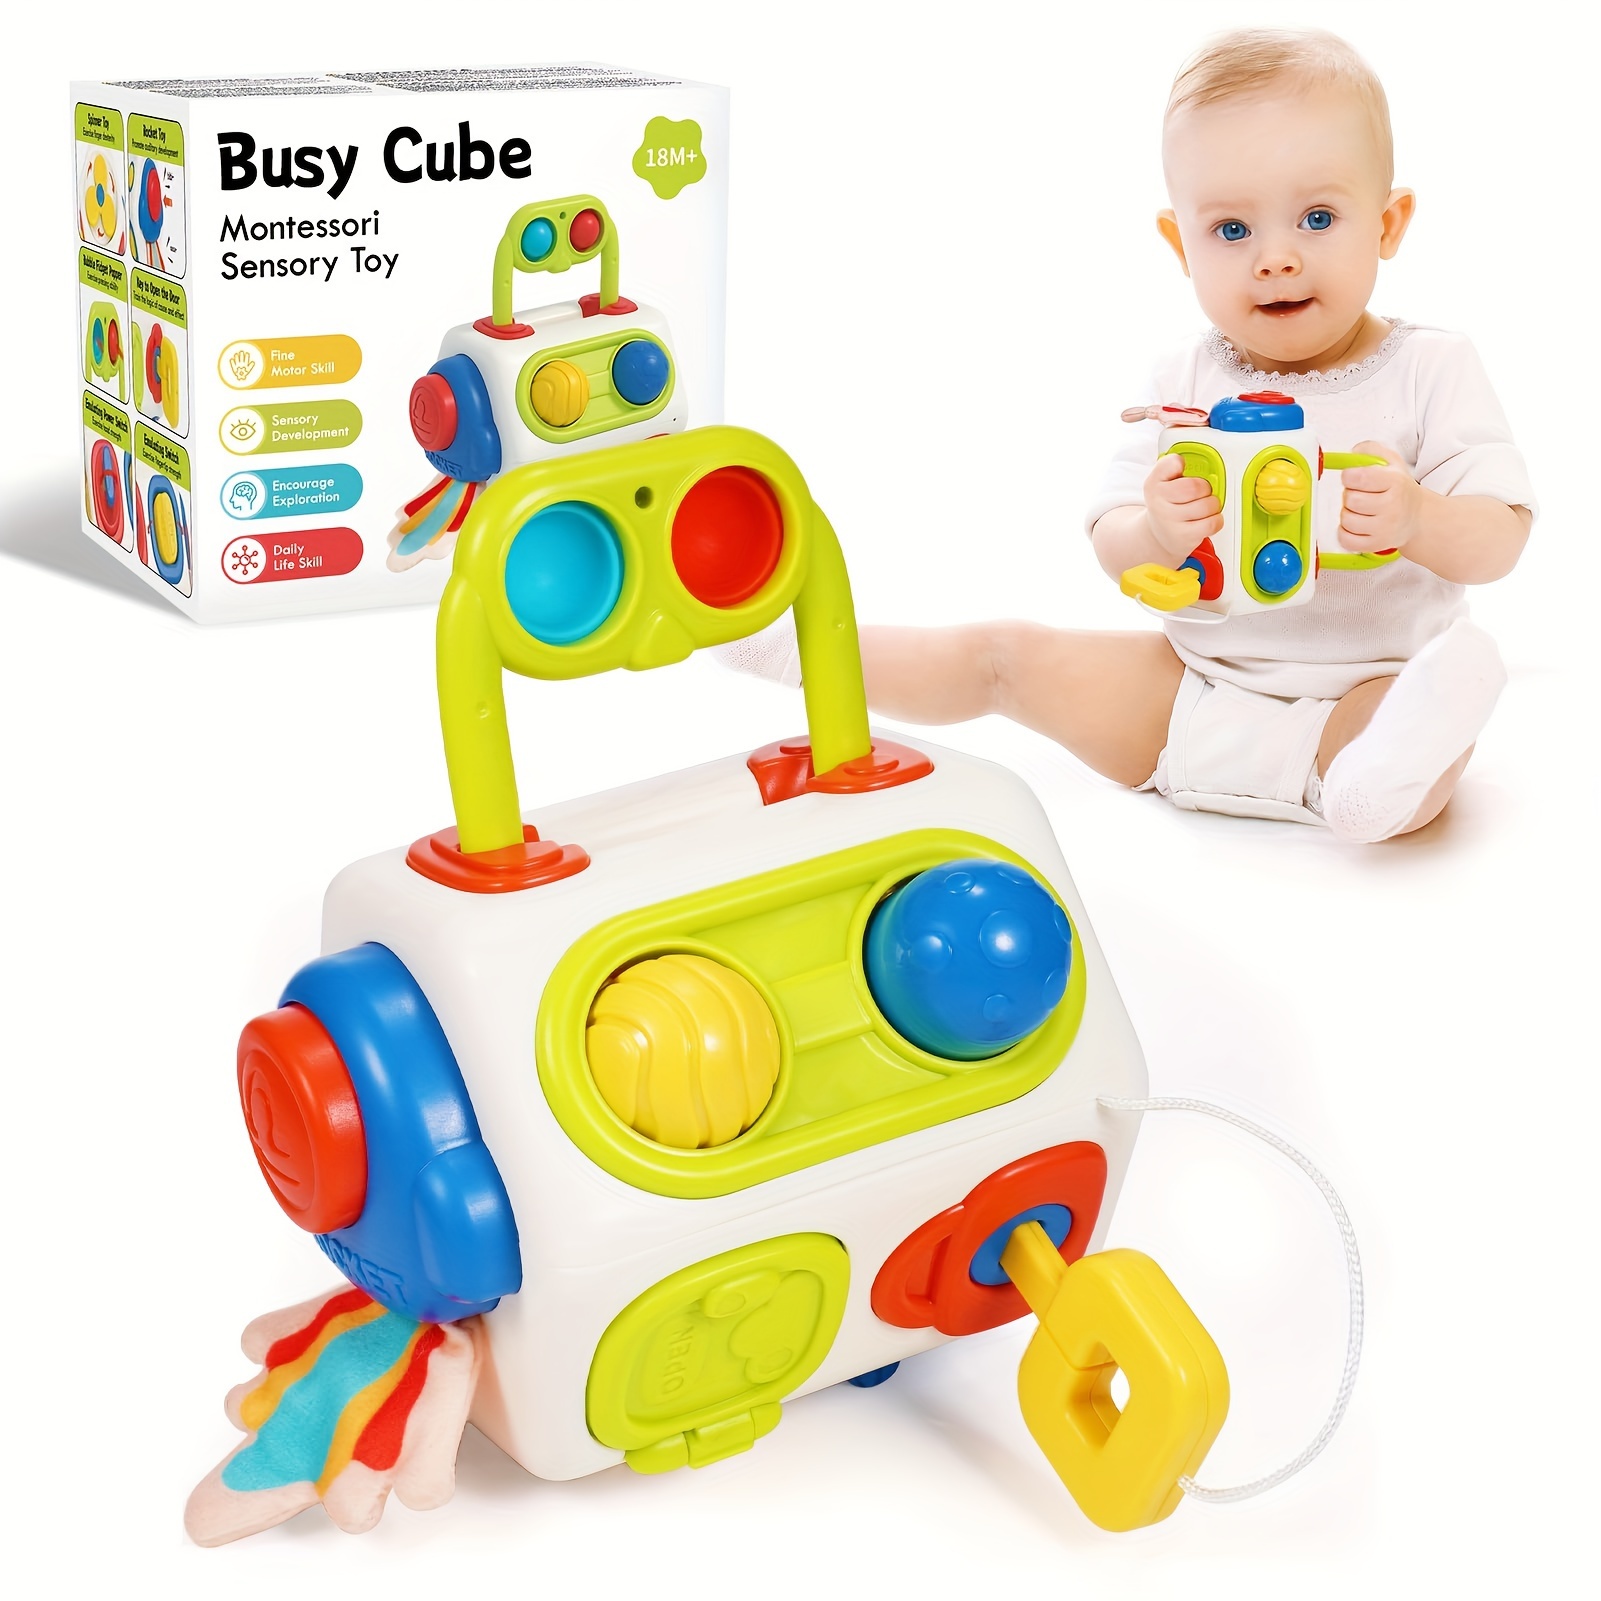 Juguetes para bebés Montessori Regalo de cumpleaños: Juguetes para niñas de  1 año, regalos de primer cumpleaños, juguetes educativos para niños